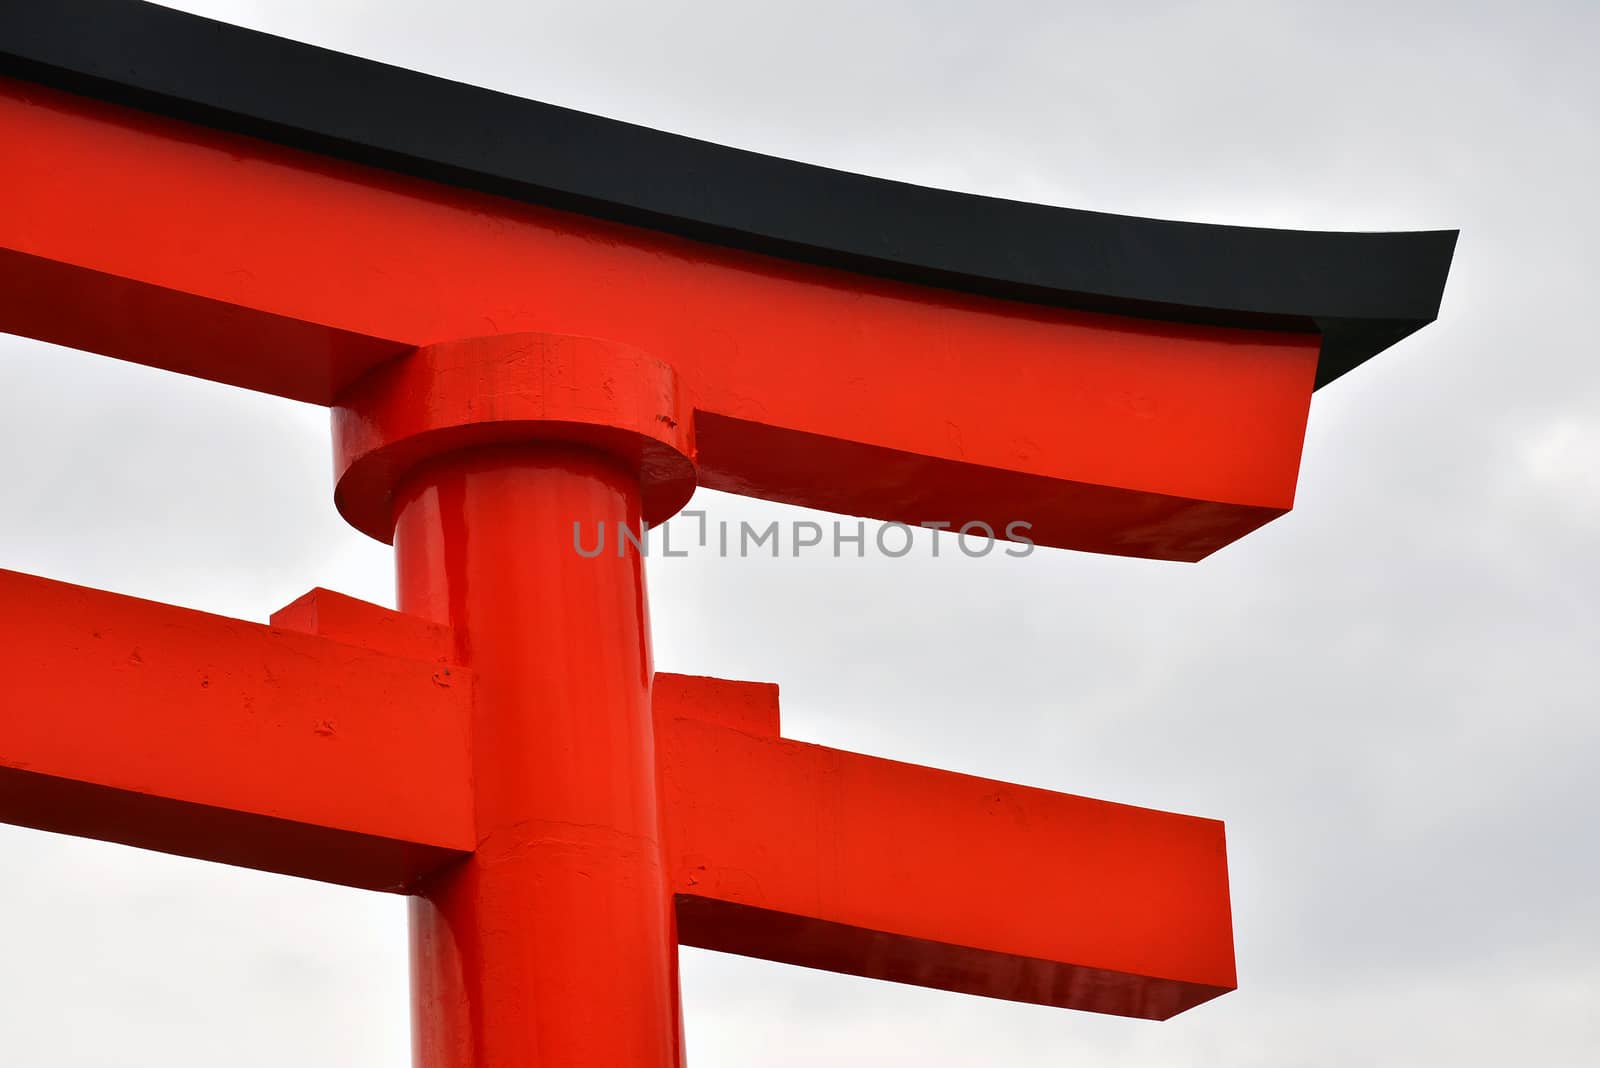 Fushimi Inari Taisha Japanese gate torii in Kyoto, Japan by imwaltersy